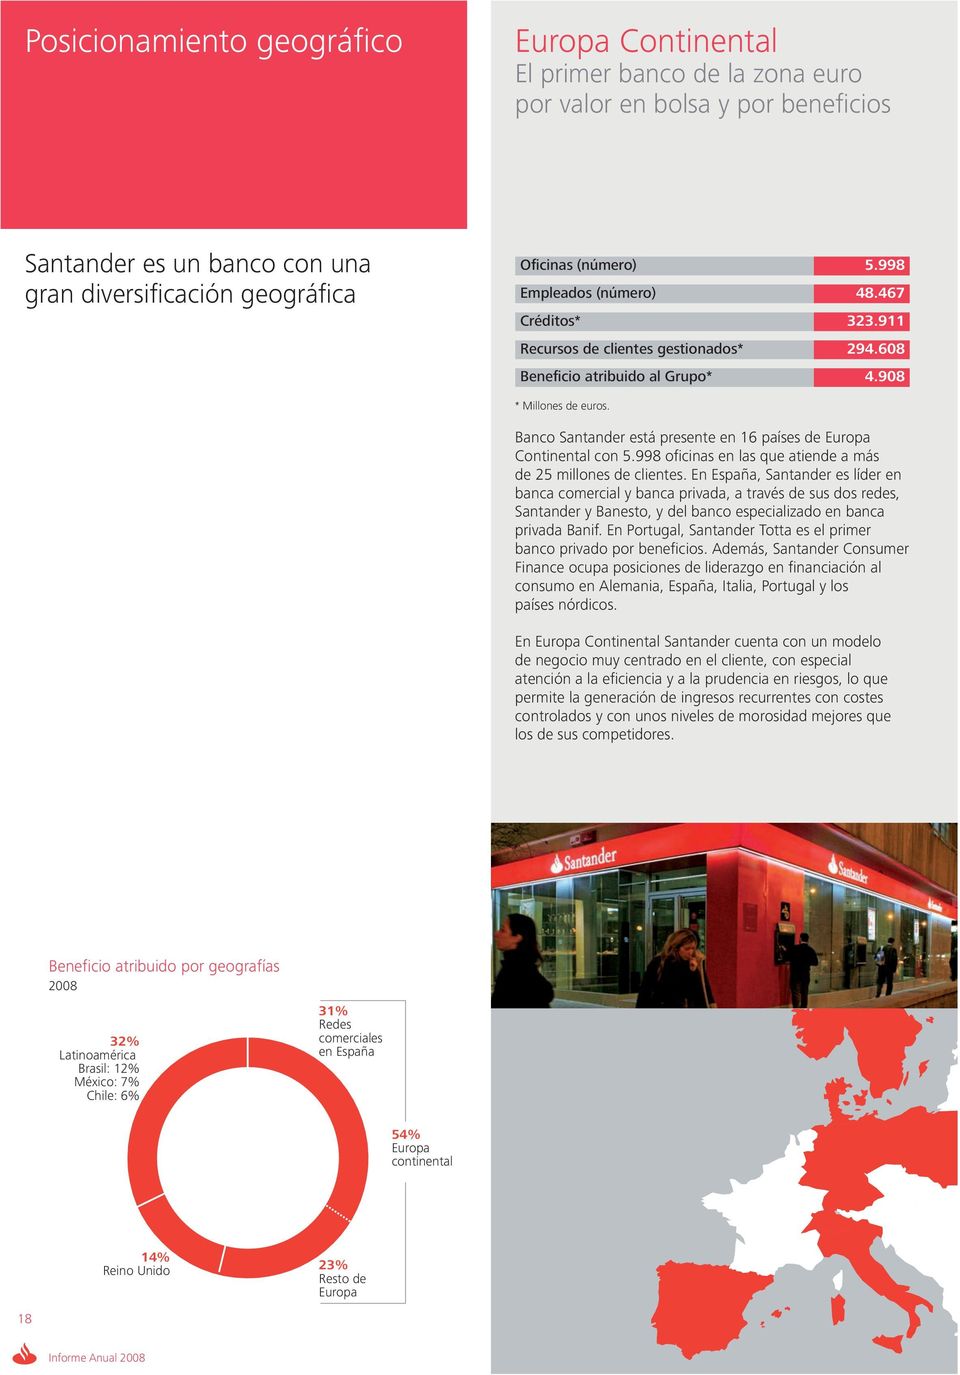 Banco Santander está presente en 16 países de Europa Continental con 5.998 oficinas en las que atiende a más de 25 millones de clientes.